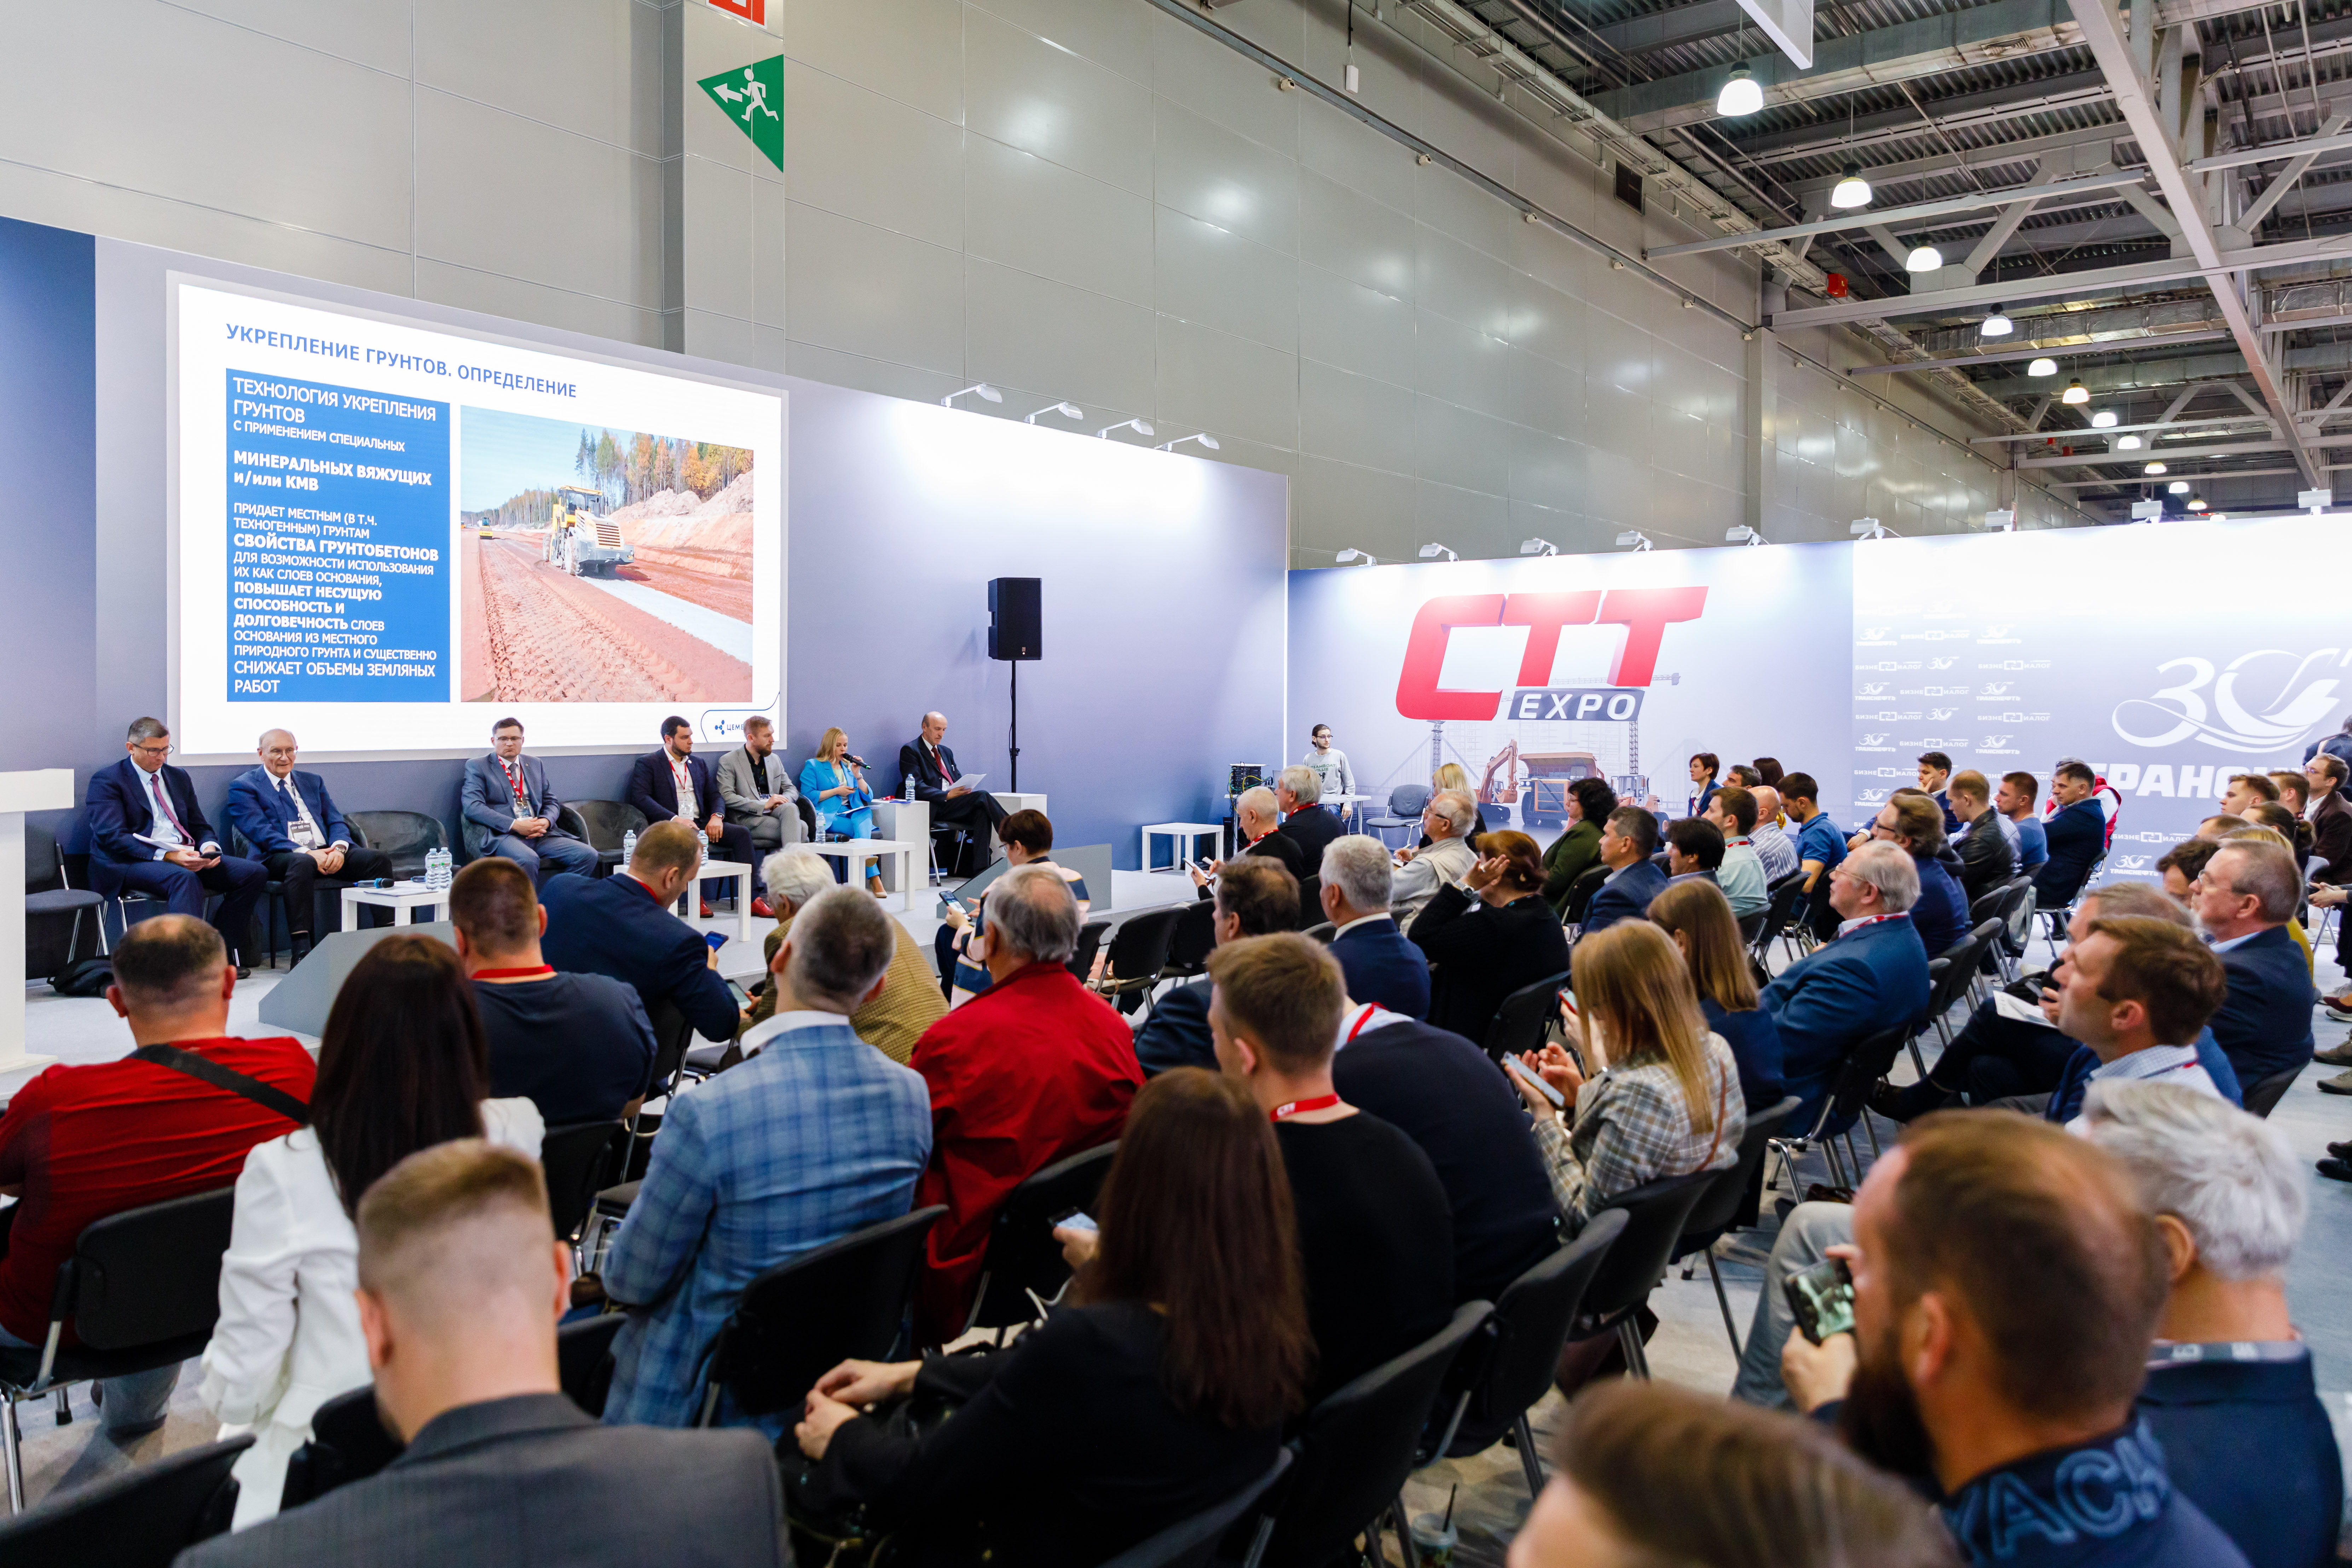 Rusya’nın en büyük iş ve inşaat makineleri fuarı CTT Expo kapılarını açıyor